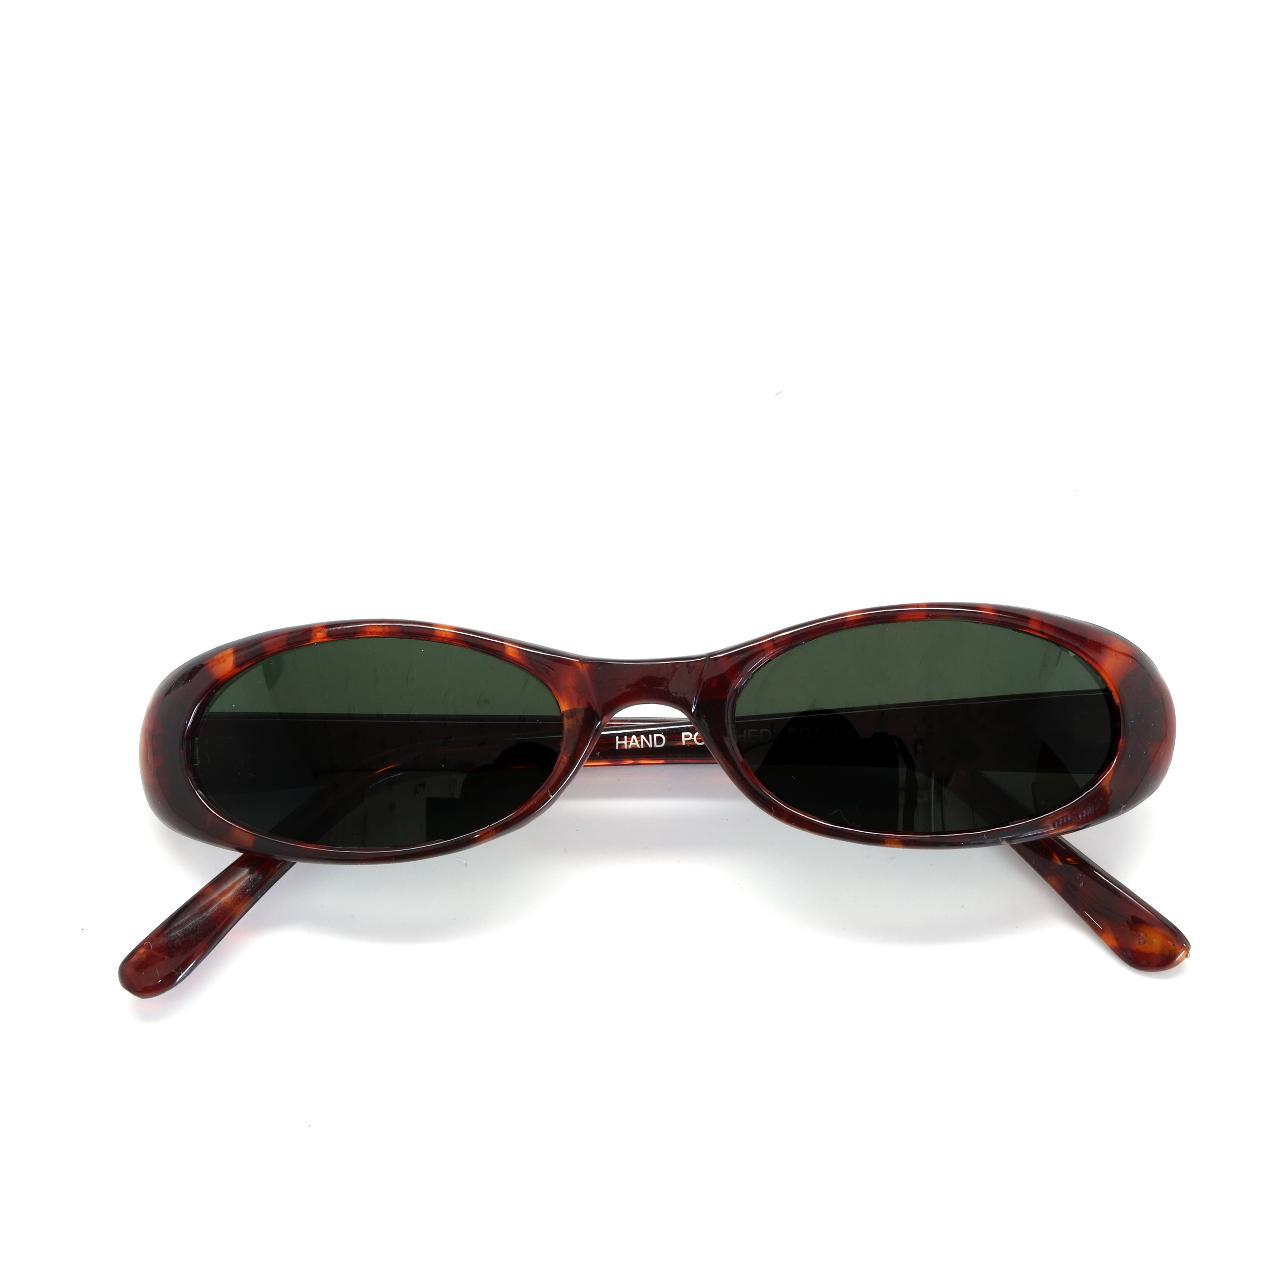 Authentic Vintage “Jane” Tortoise Oval Sunglasses - Depop